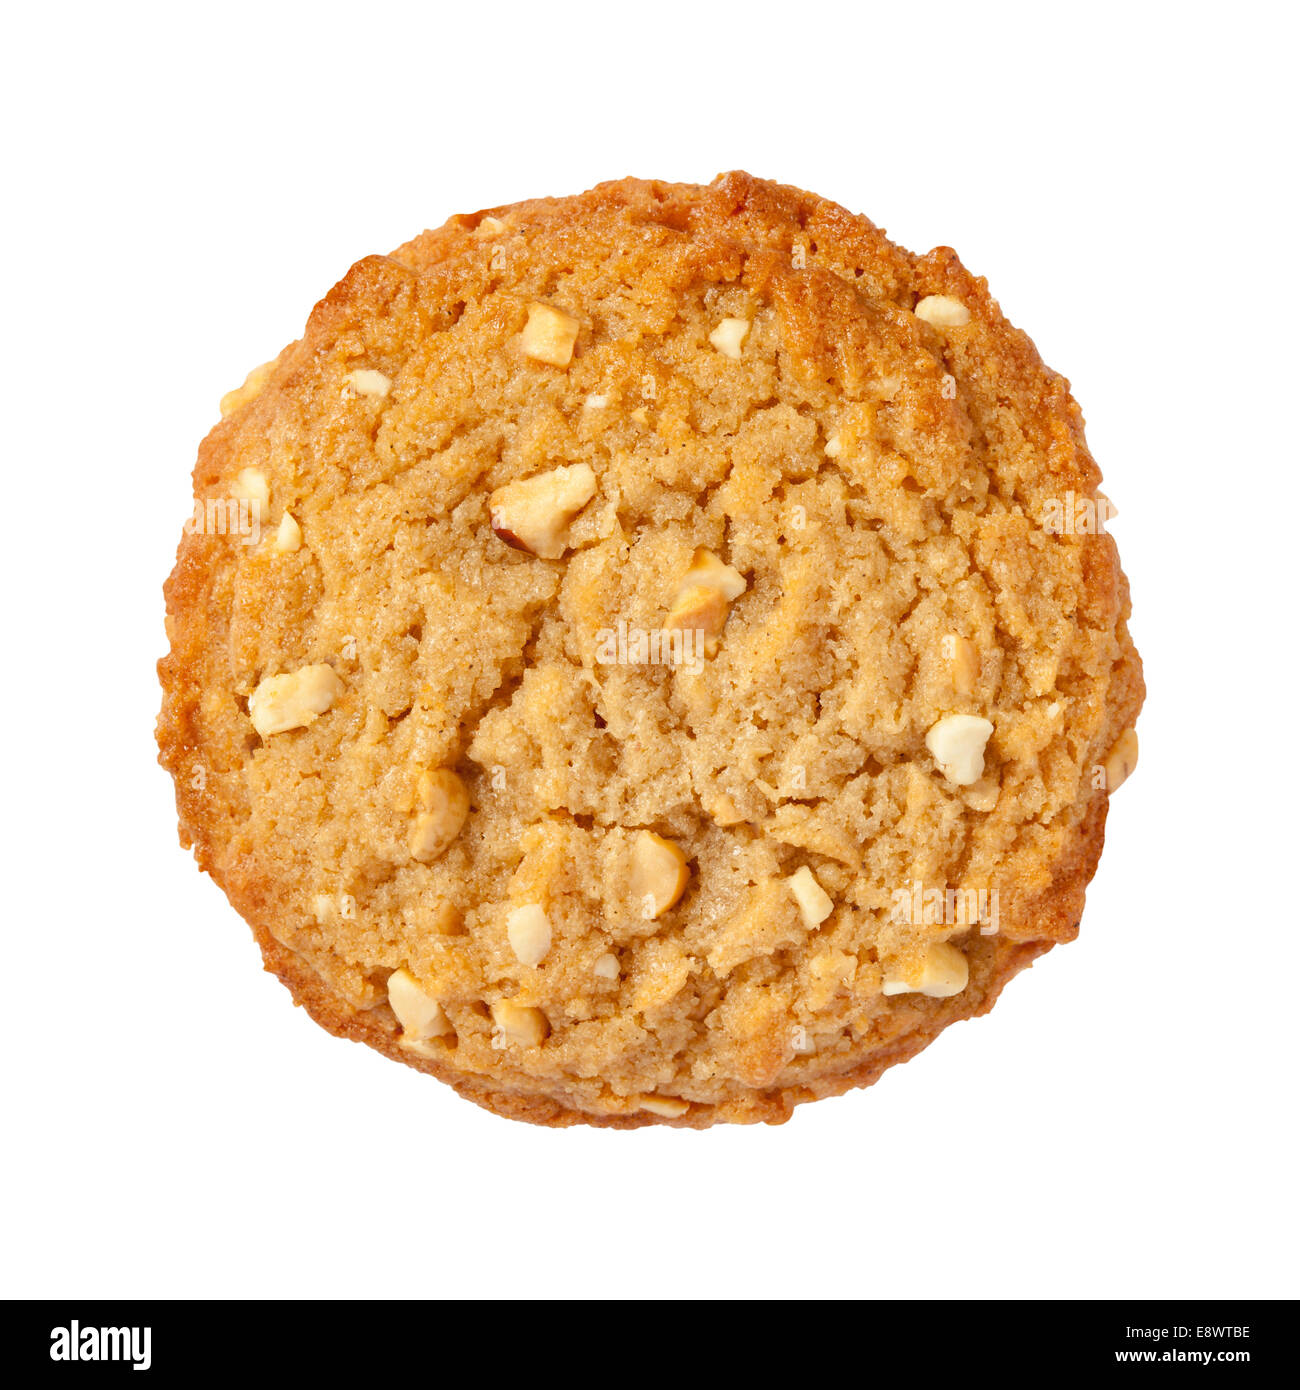 Burro di arachidi Cookie isolato su uno sfondo bianco. Foto Stock